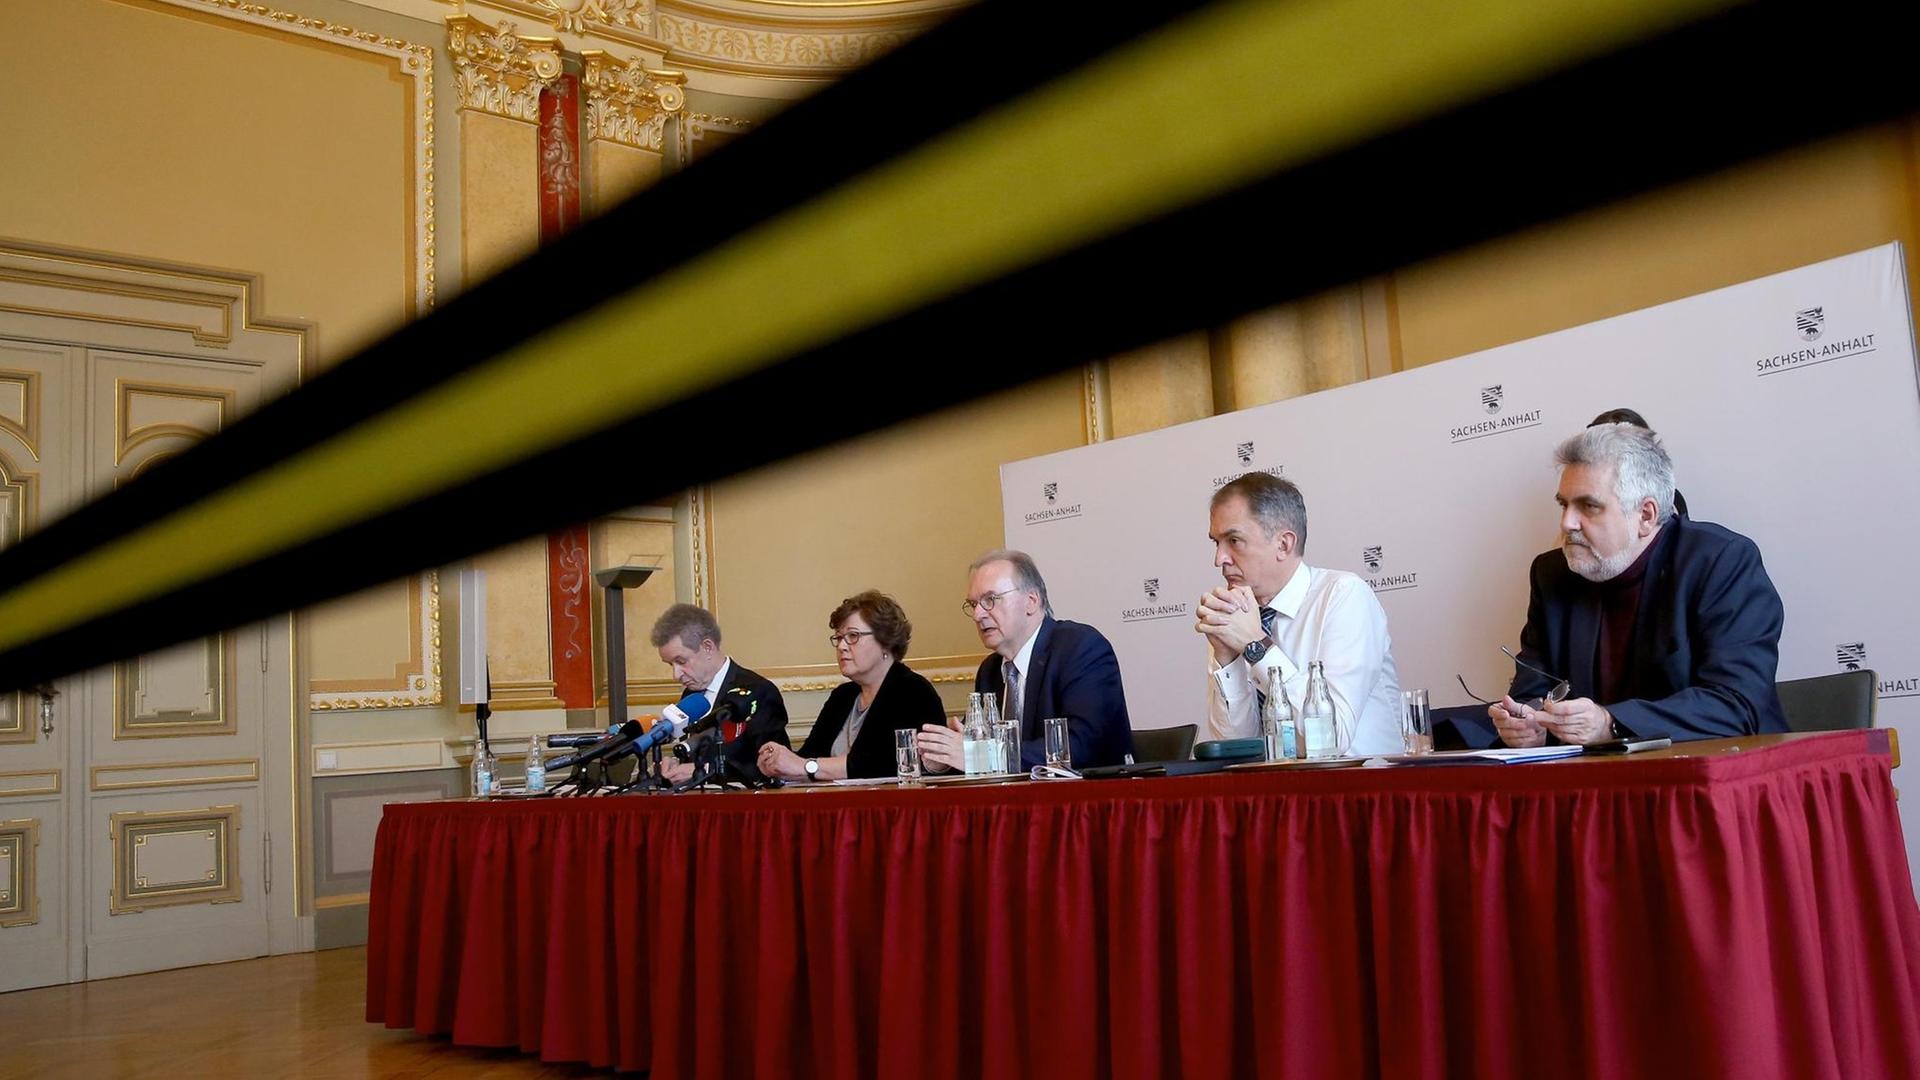 Teile von Sachsen-Anhalts Landesregierung bei einer Pressekonferenz, wegen der Coronakrise hinter einem Absperrband